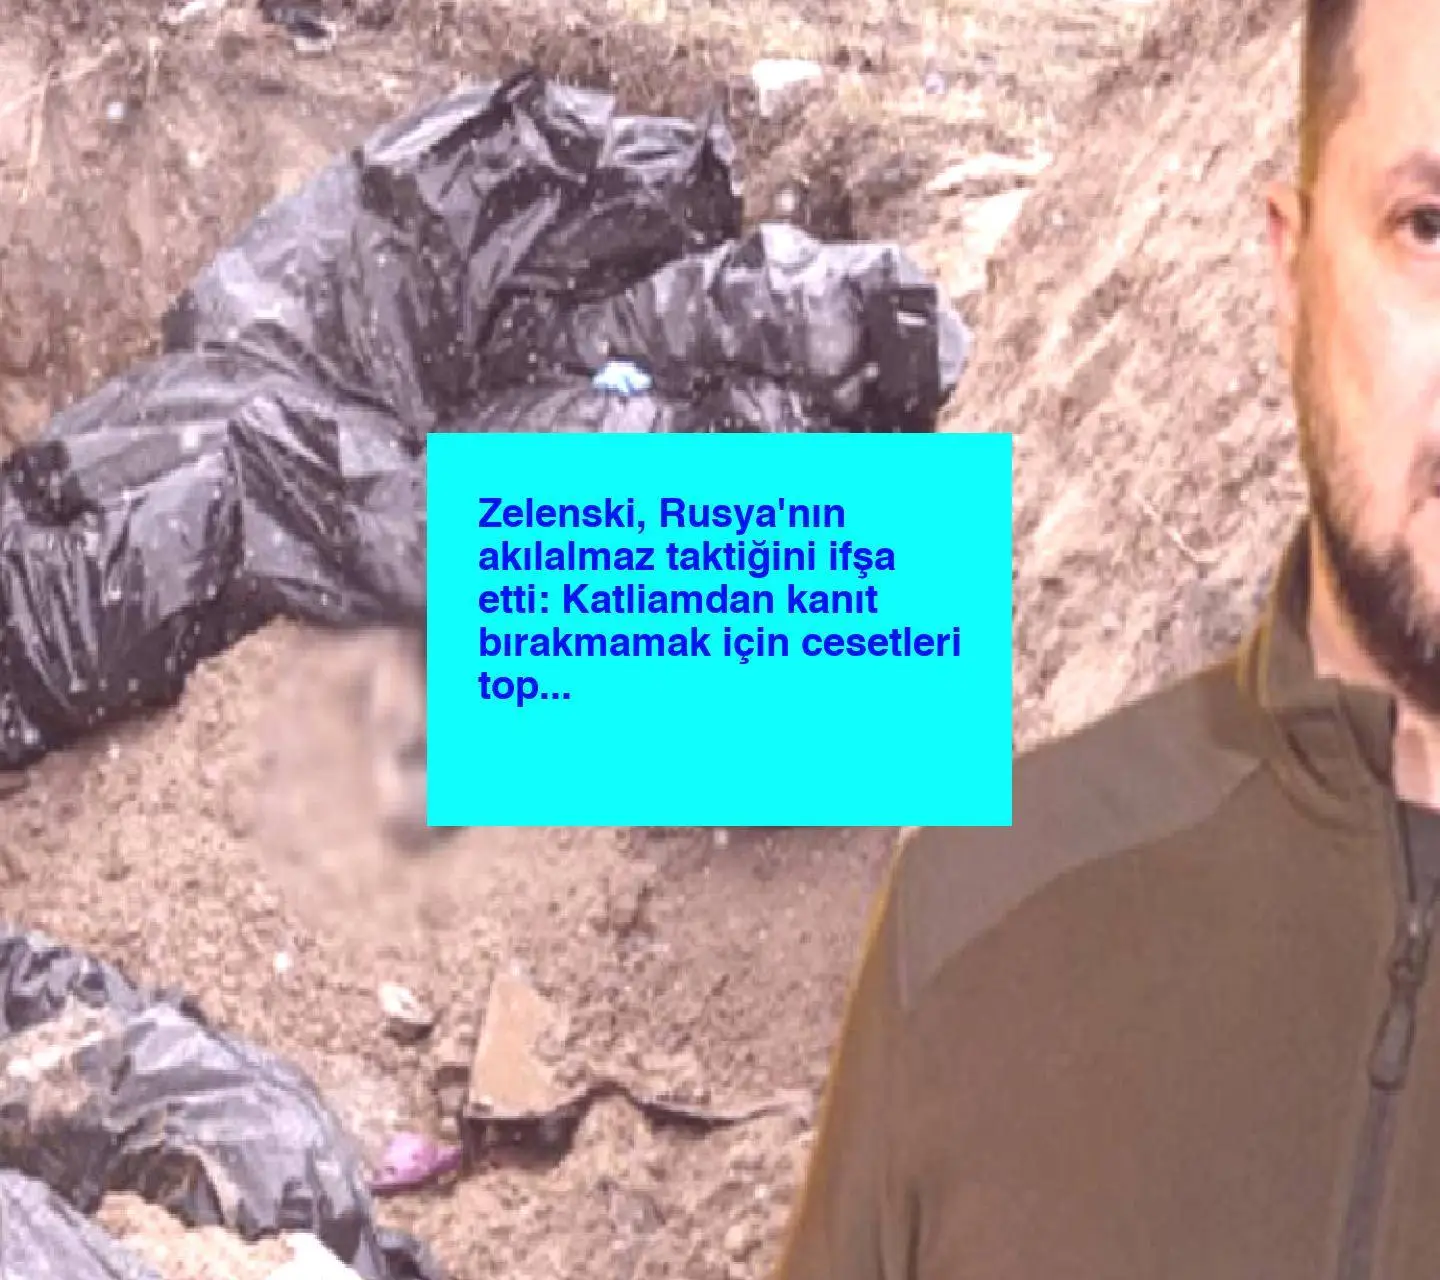 Zelenski, Rusya’nın akılalmaz taktiğini ifşa etti: Katliamdan kanıt bırakmamak için cesetleri topluyorlar